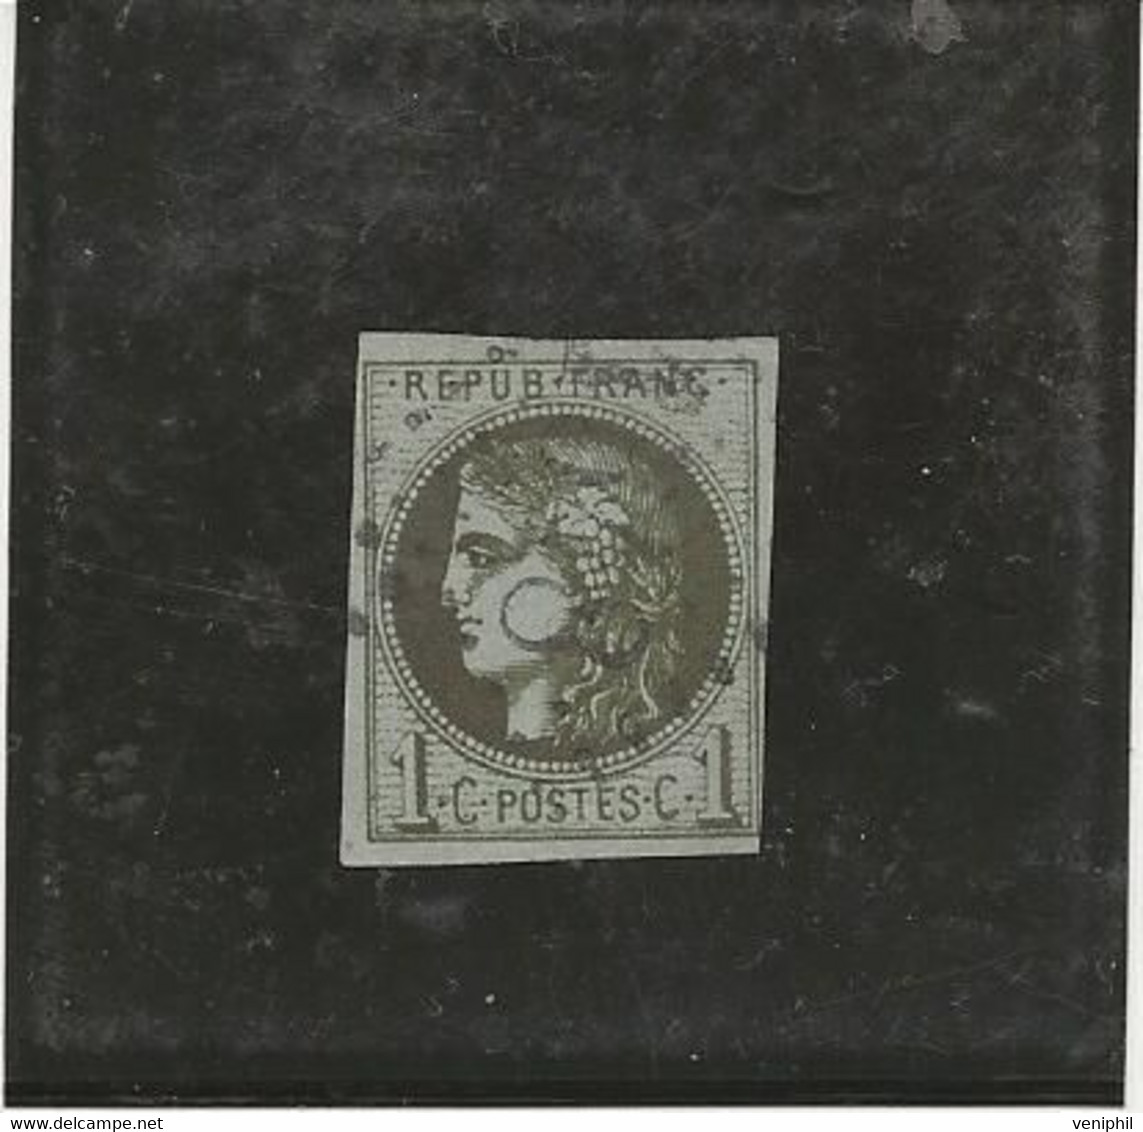 EMISSION DE BORDEAUX -TIMBRE N° 39 B OBLITERE  .TB -ANNEE 1870 - COTE : 220 € - 1870 Bordeaux Printing